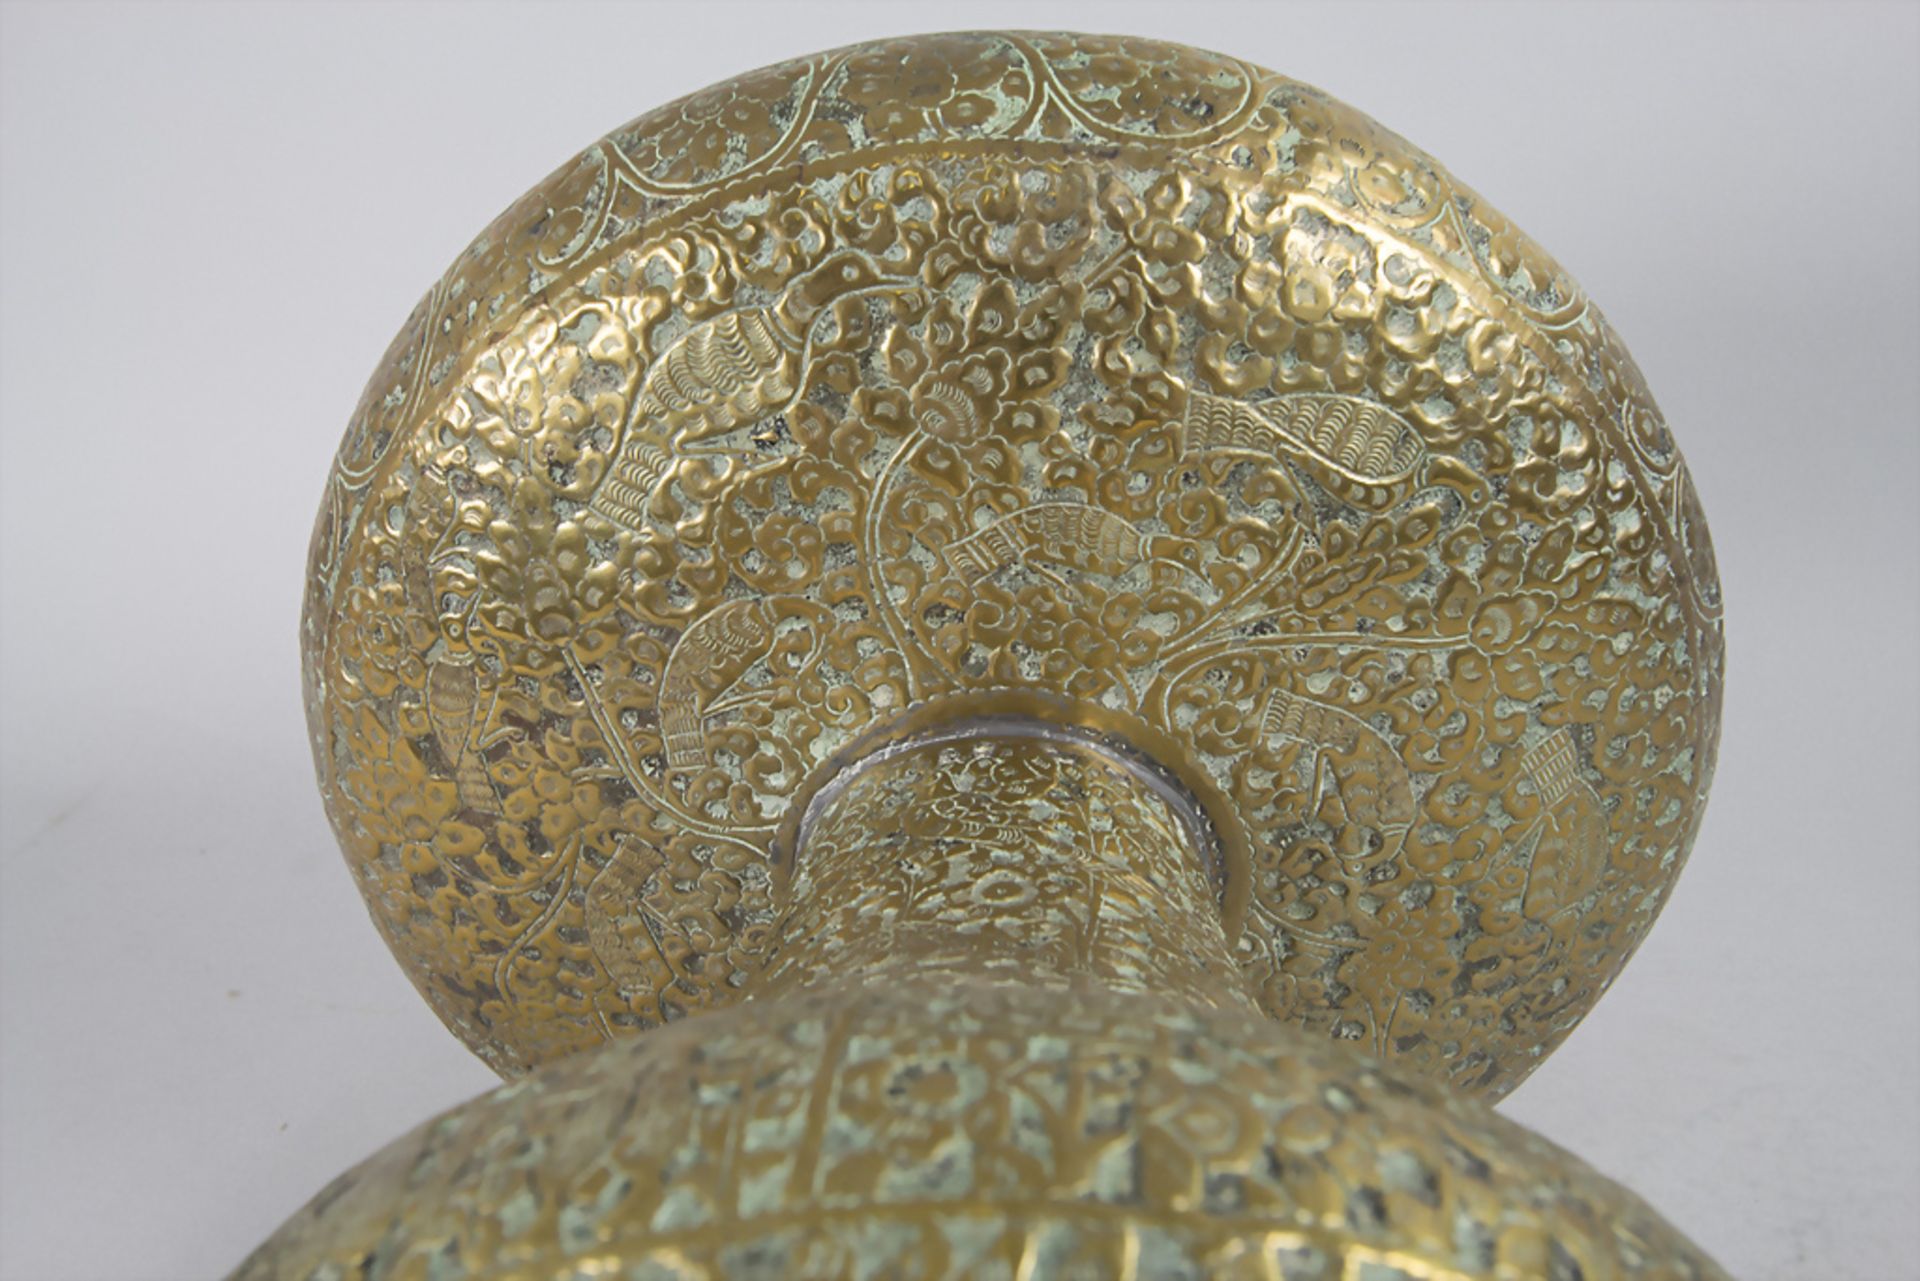 Orientalische Fußschale / An Oriental footed bowl, wohl Persien, um 1920 - Image 4 of 6